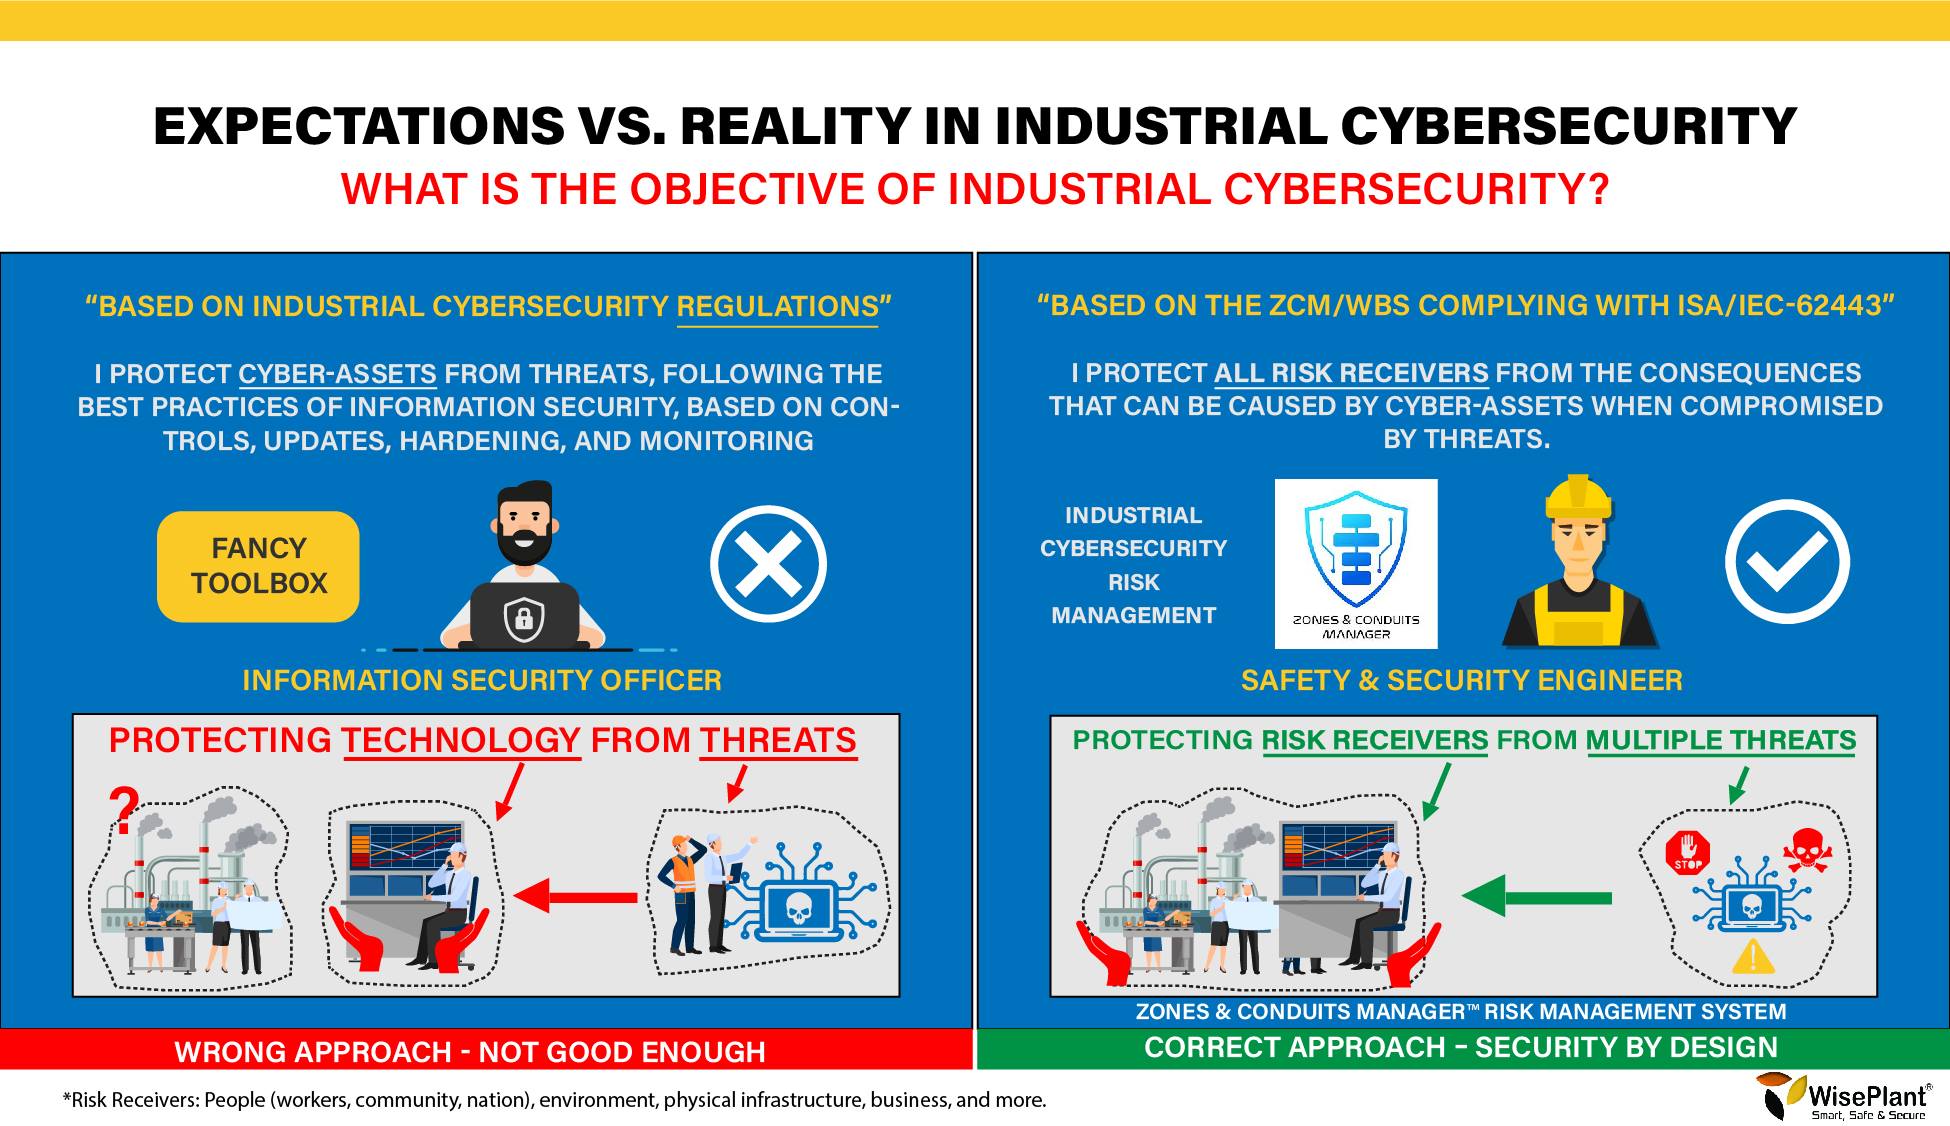 ¿Cuál es el Objetivo de su Programa de Ciberseguridad Industrial? 1